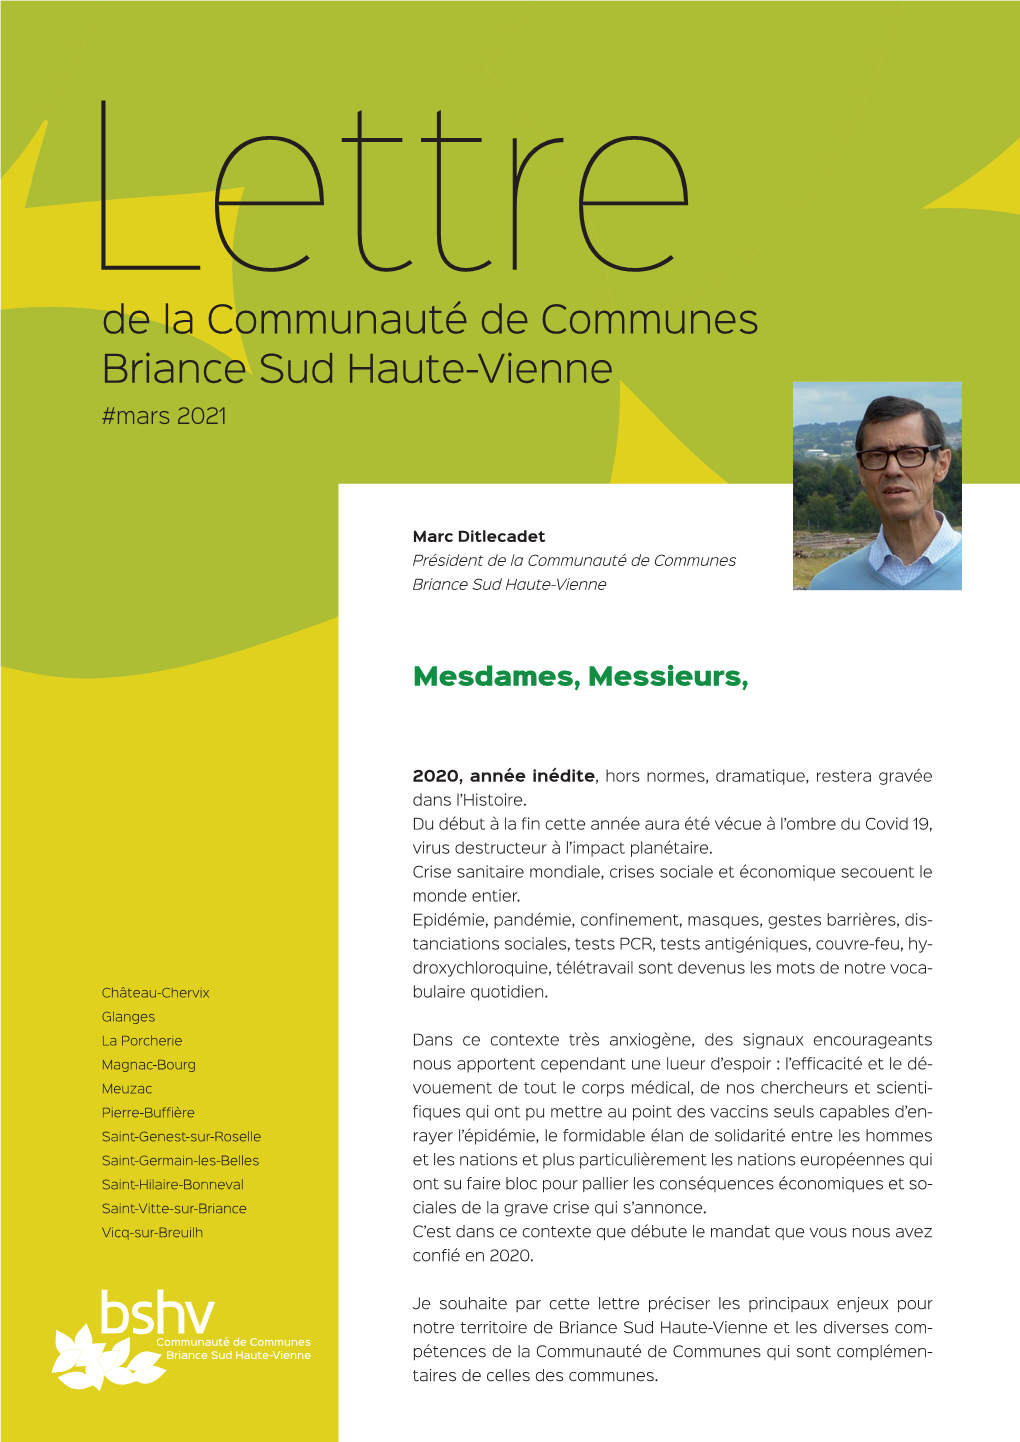 De La Communauté De Communes Briance Sud Haute-Vienne #Mars 2021